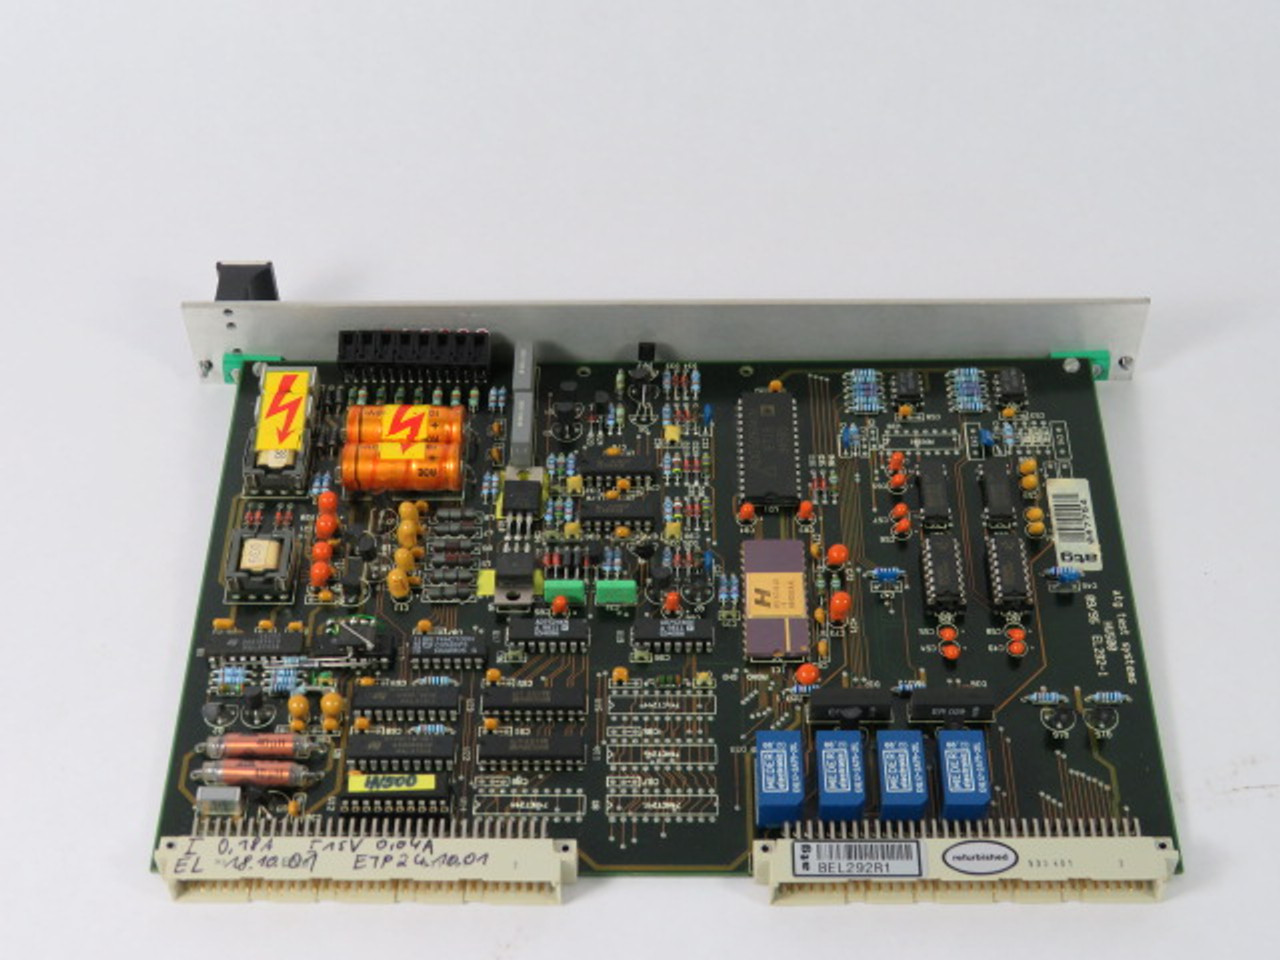 ATG EL292-1 I/O Controller Board USED